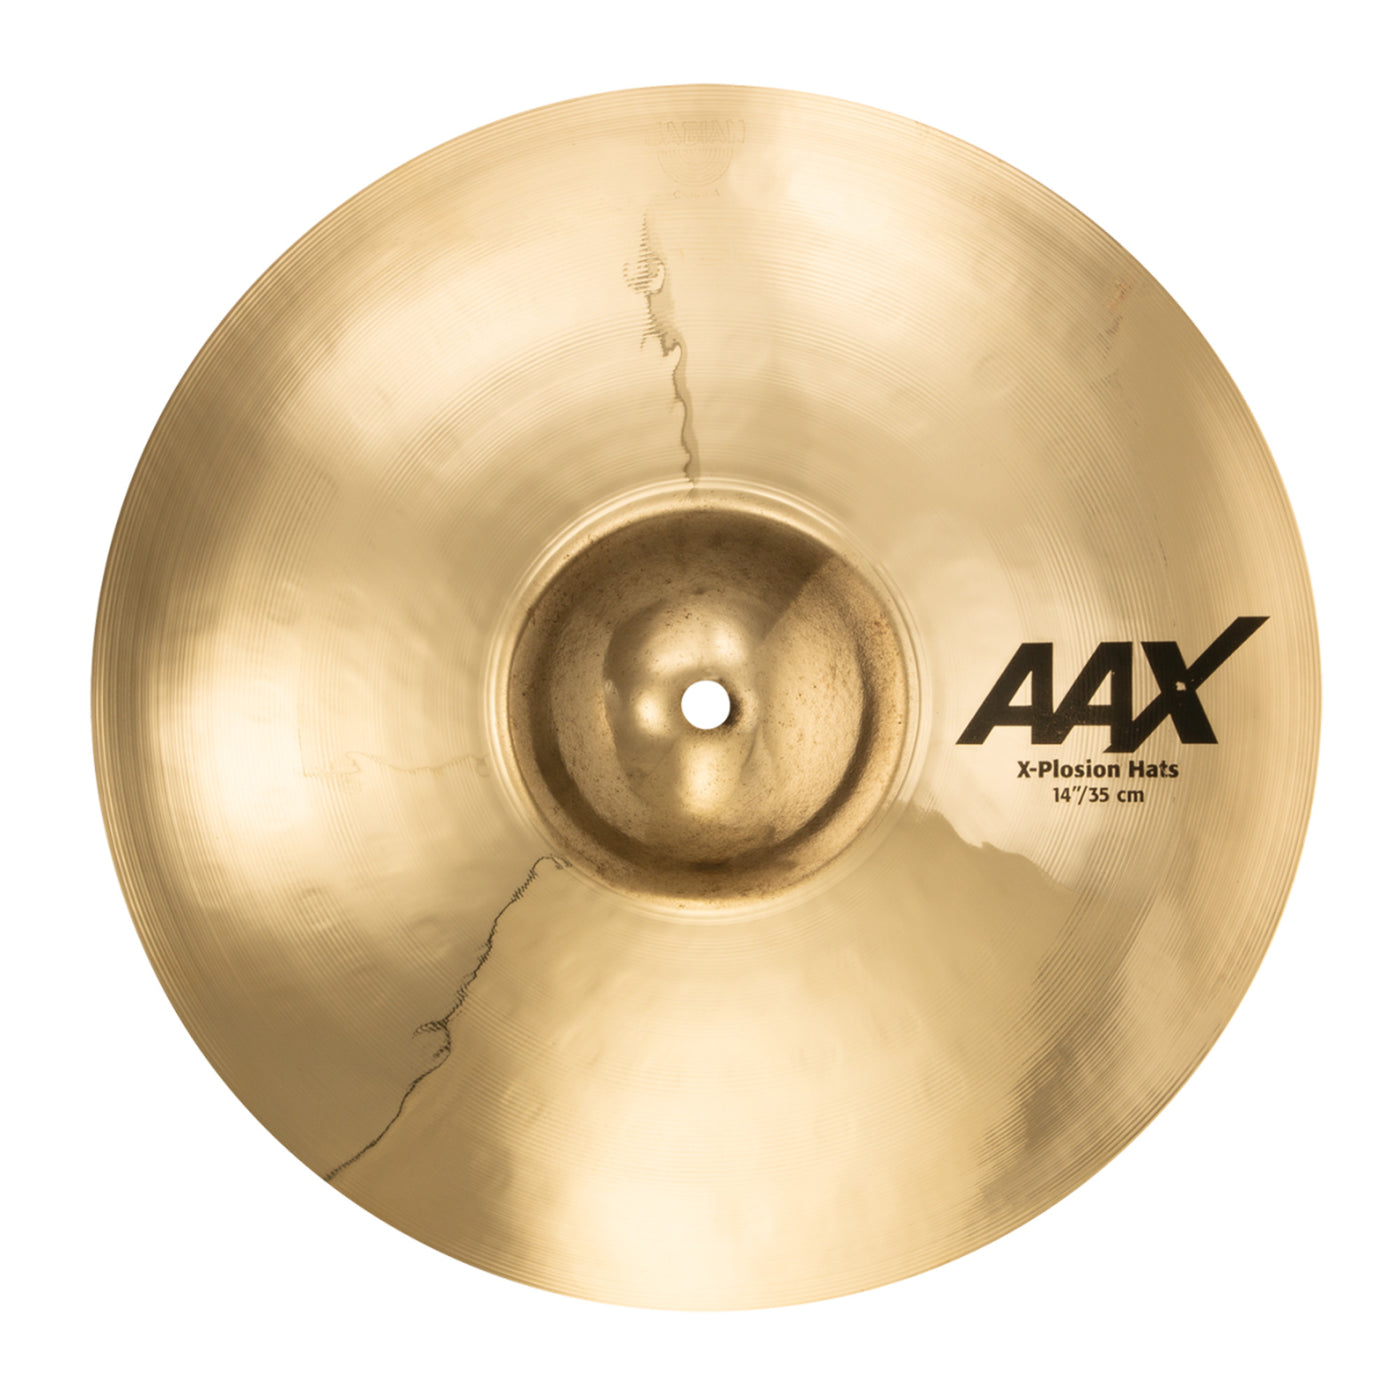 Sabian AAX 14" X-Plosion Hi-Hat Cymbals, Brilliant Finish, 2140287XB